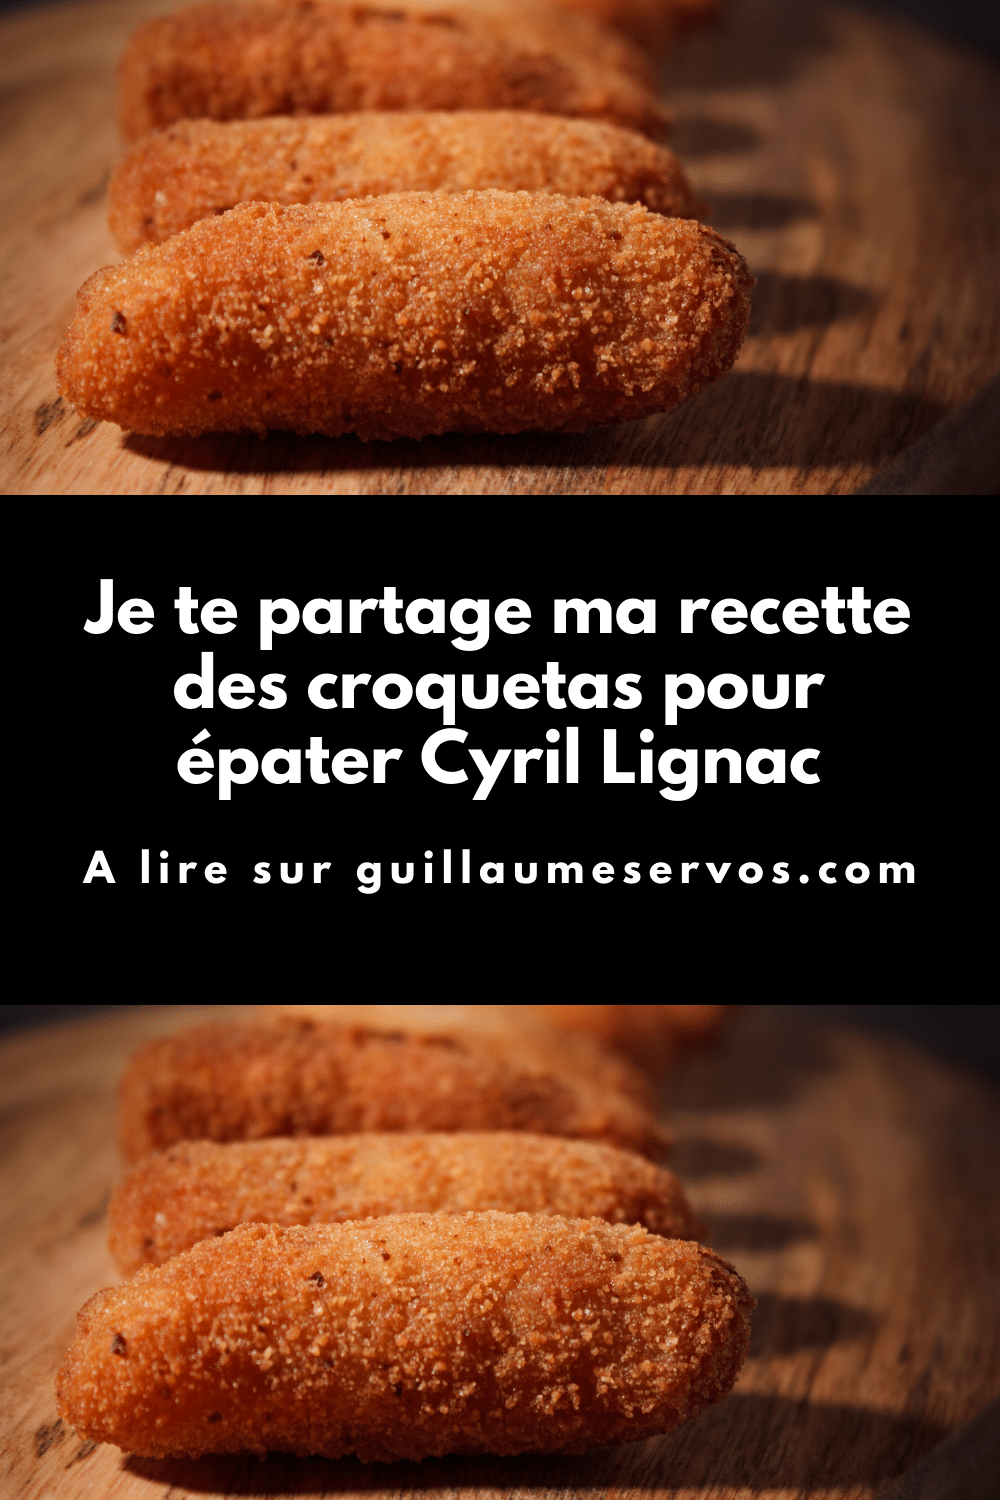 La recette des croquetas pour épater Cyril Lignac